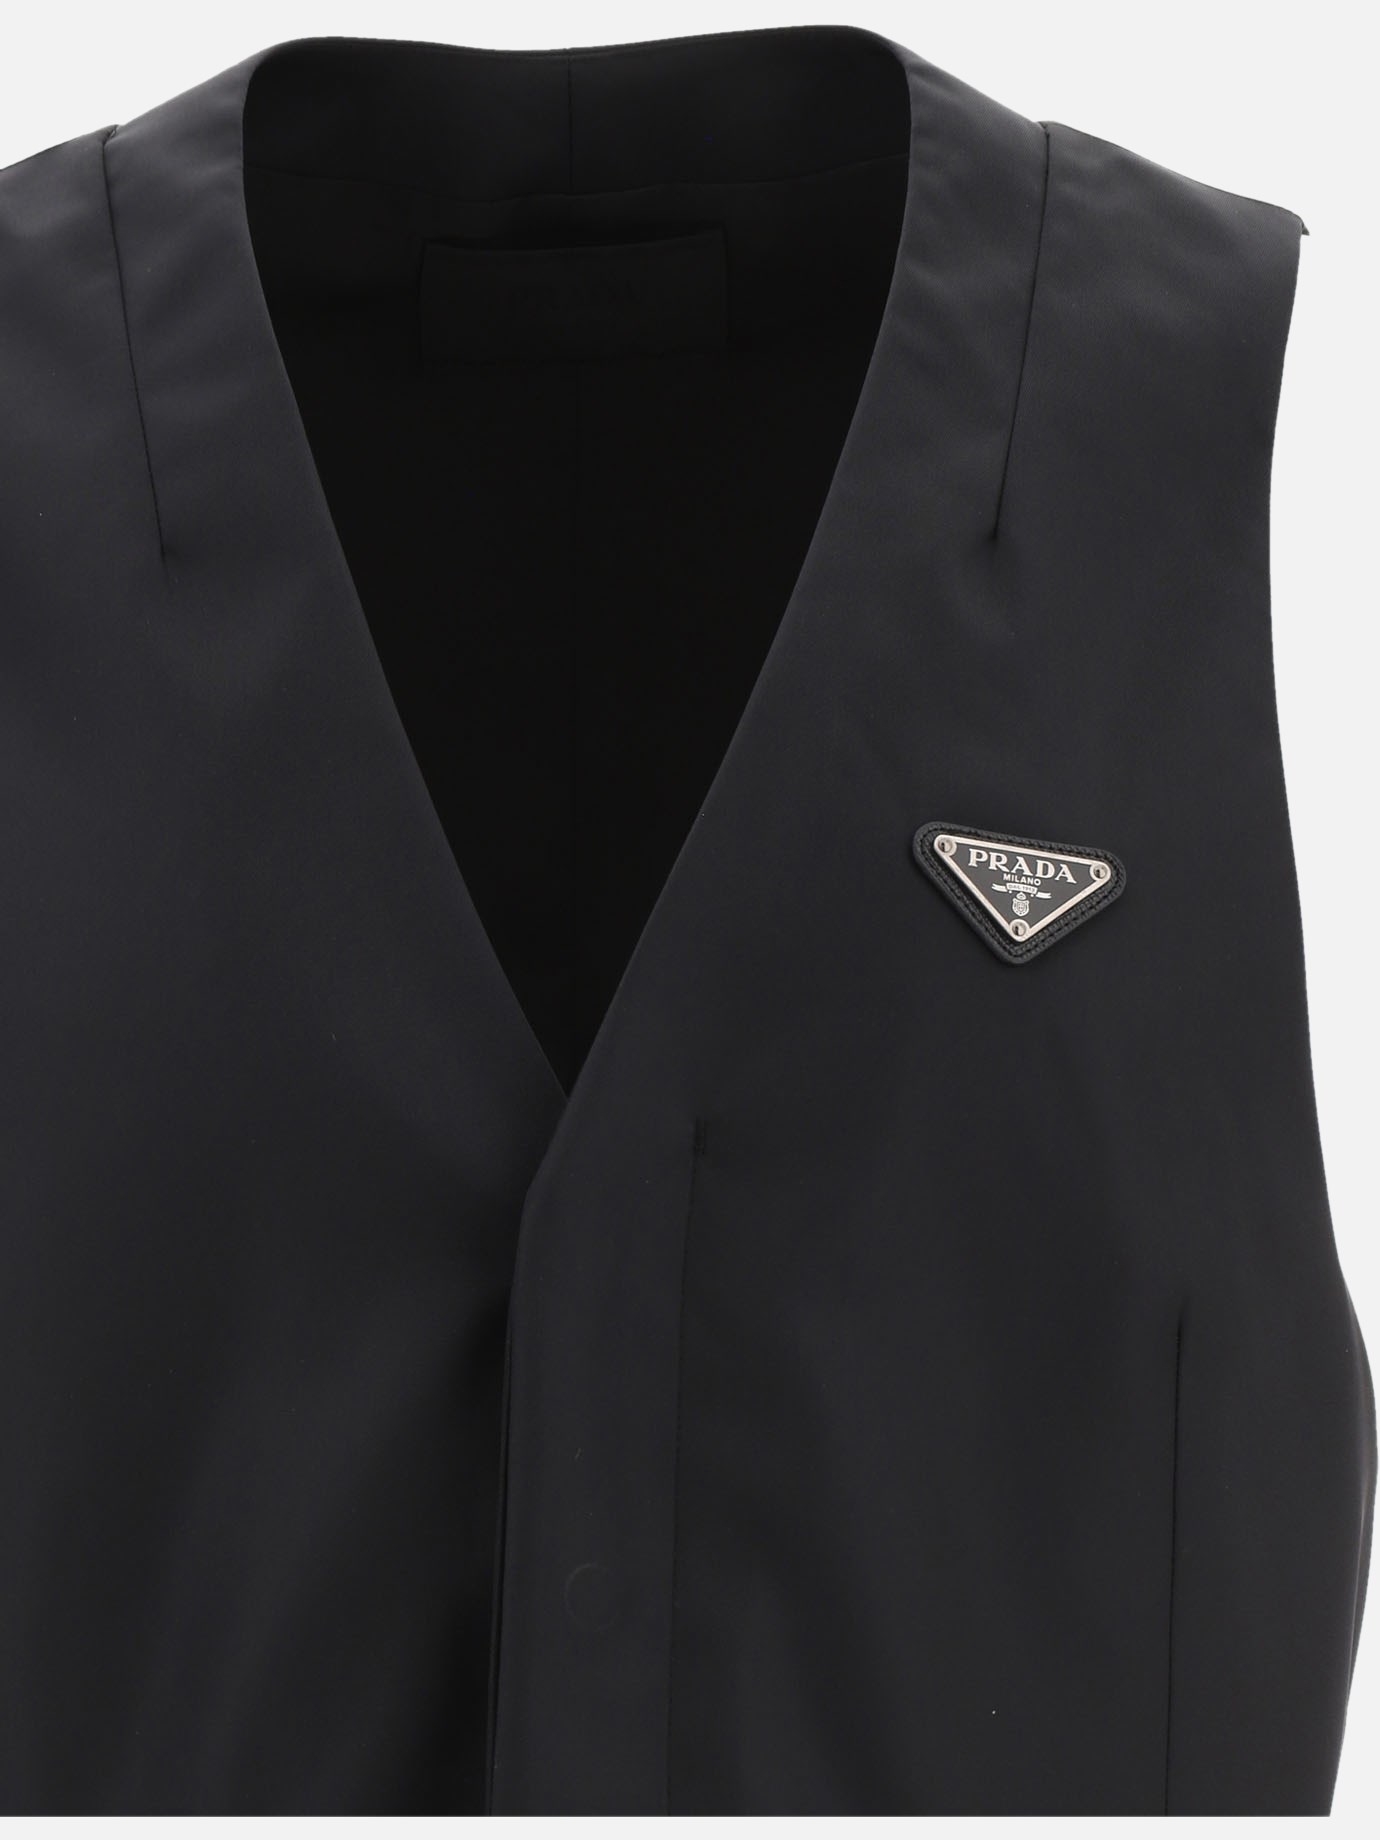  Re-Nylon  waistcoat by Prada